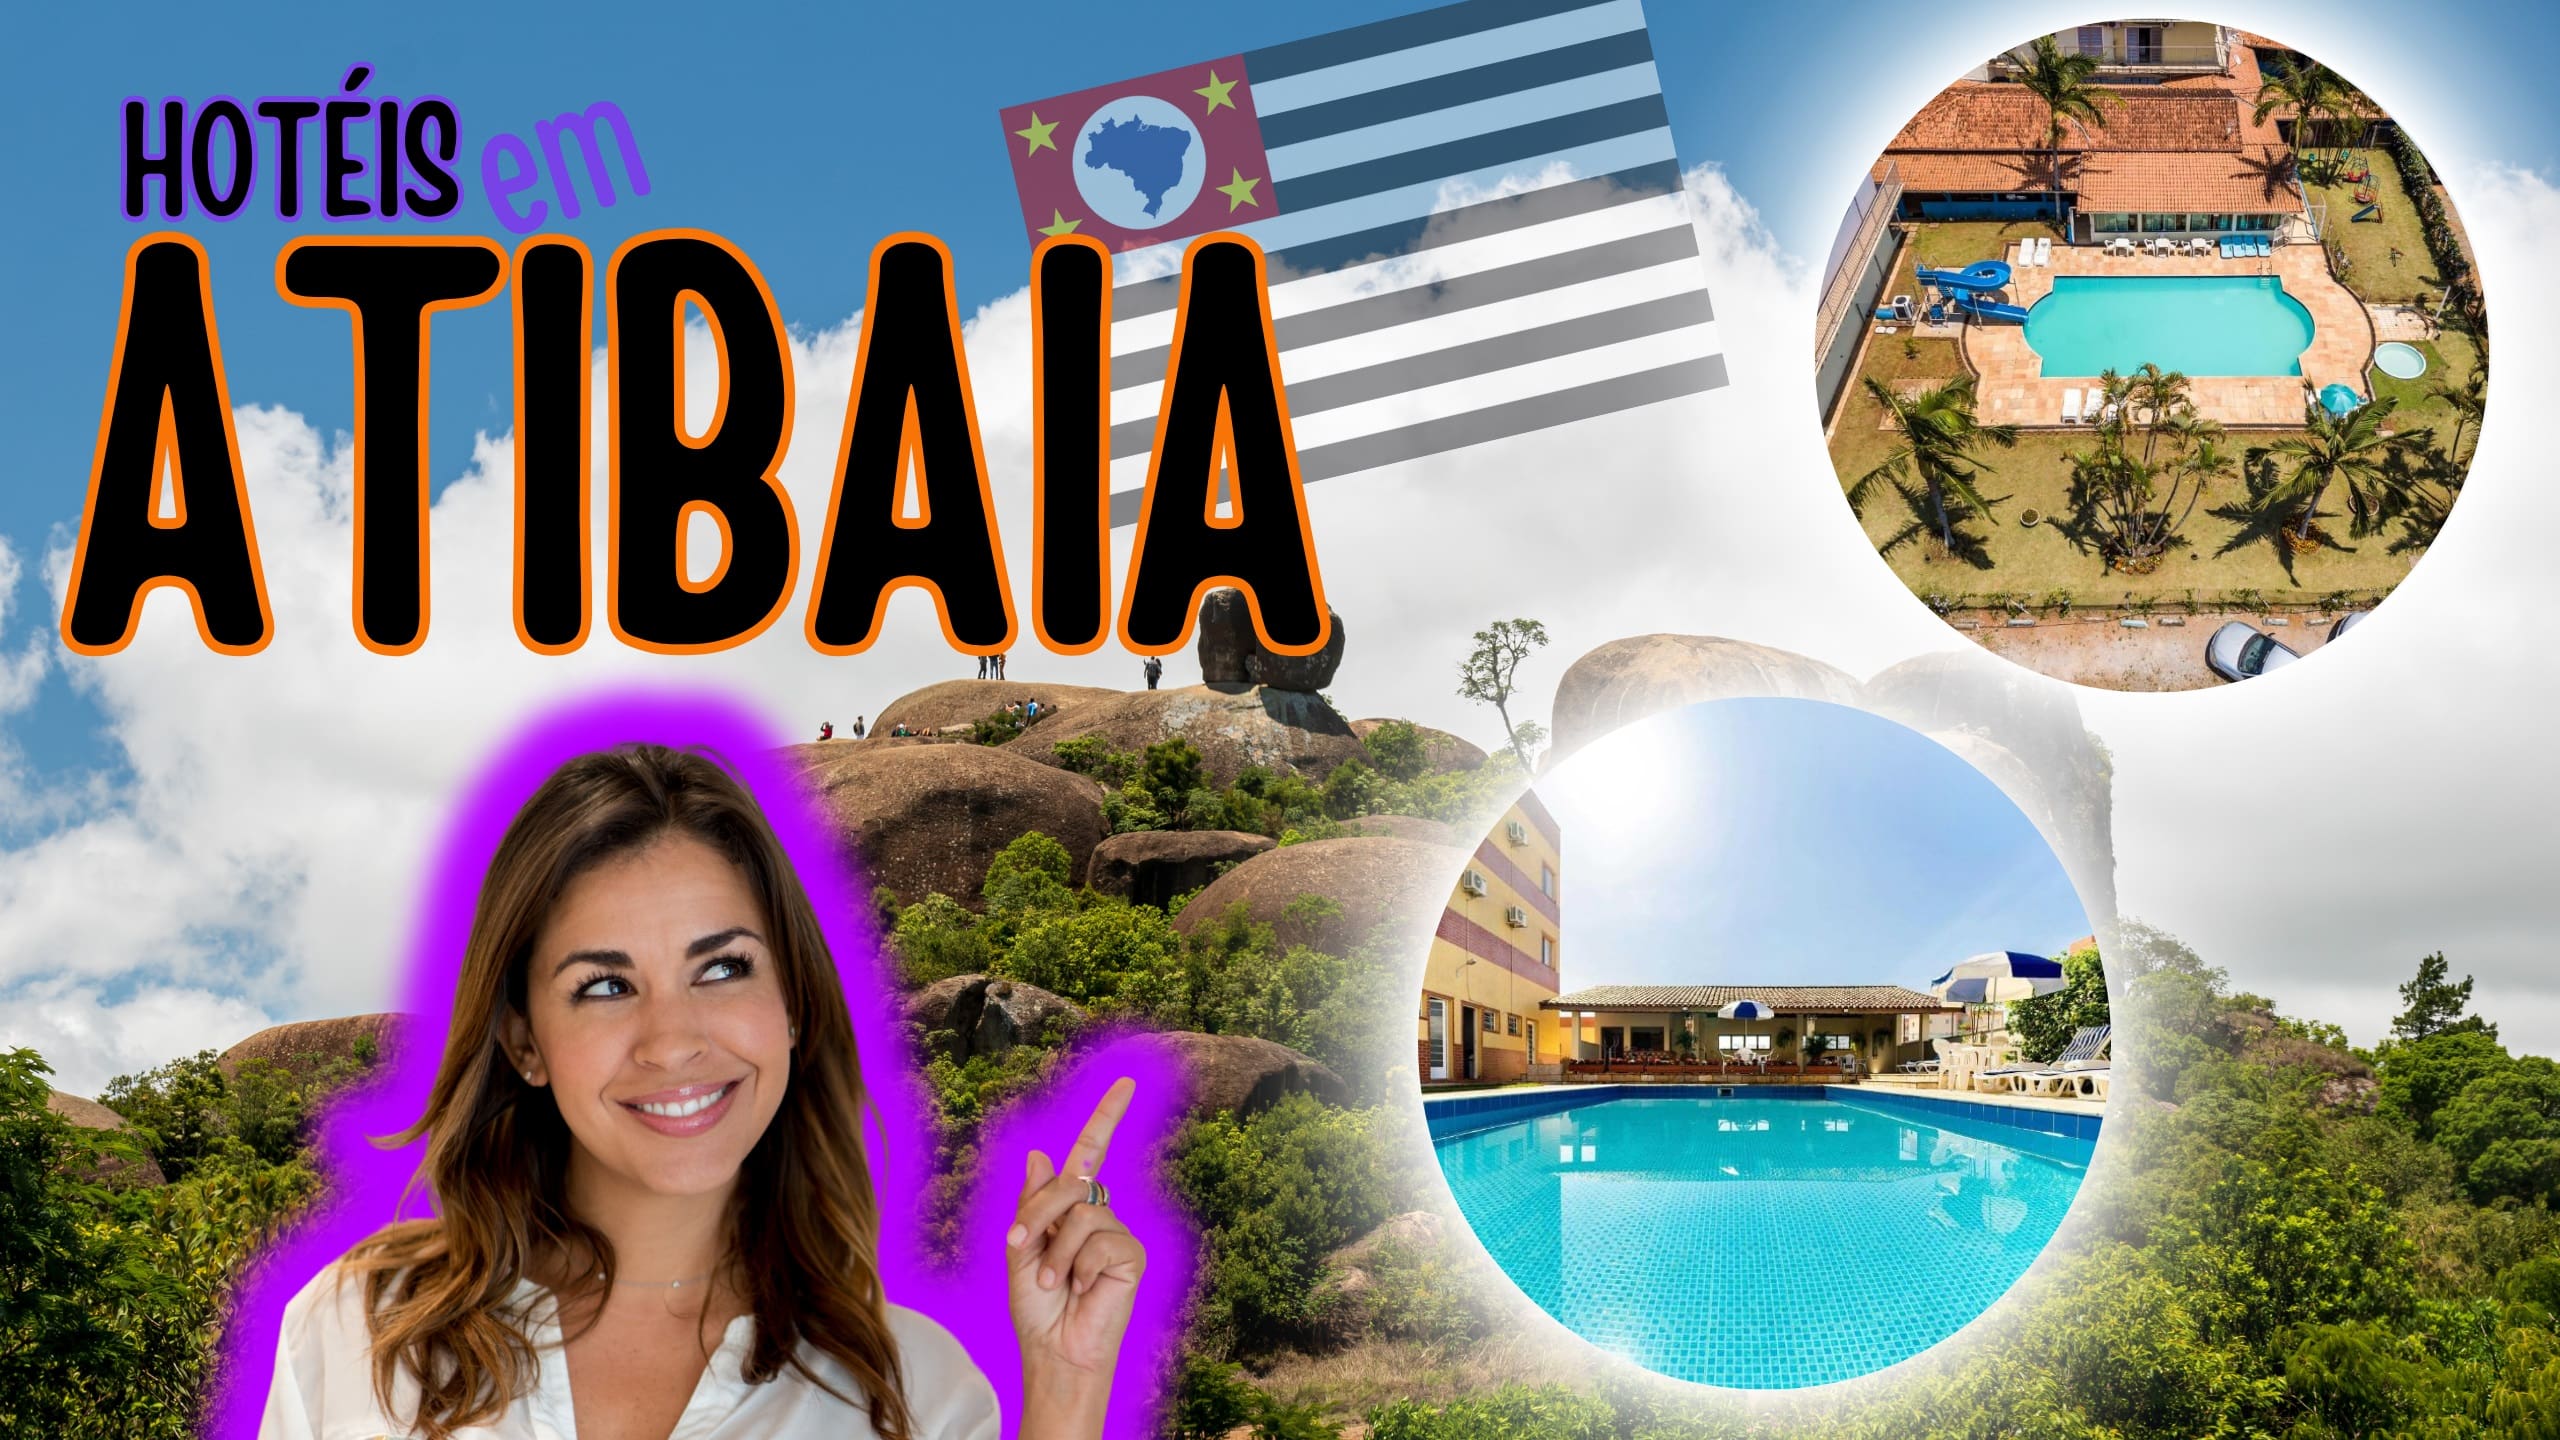 Melhores hotéis em Atibaia: Conheça o TOP 7